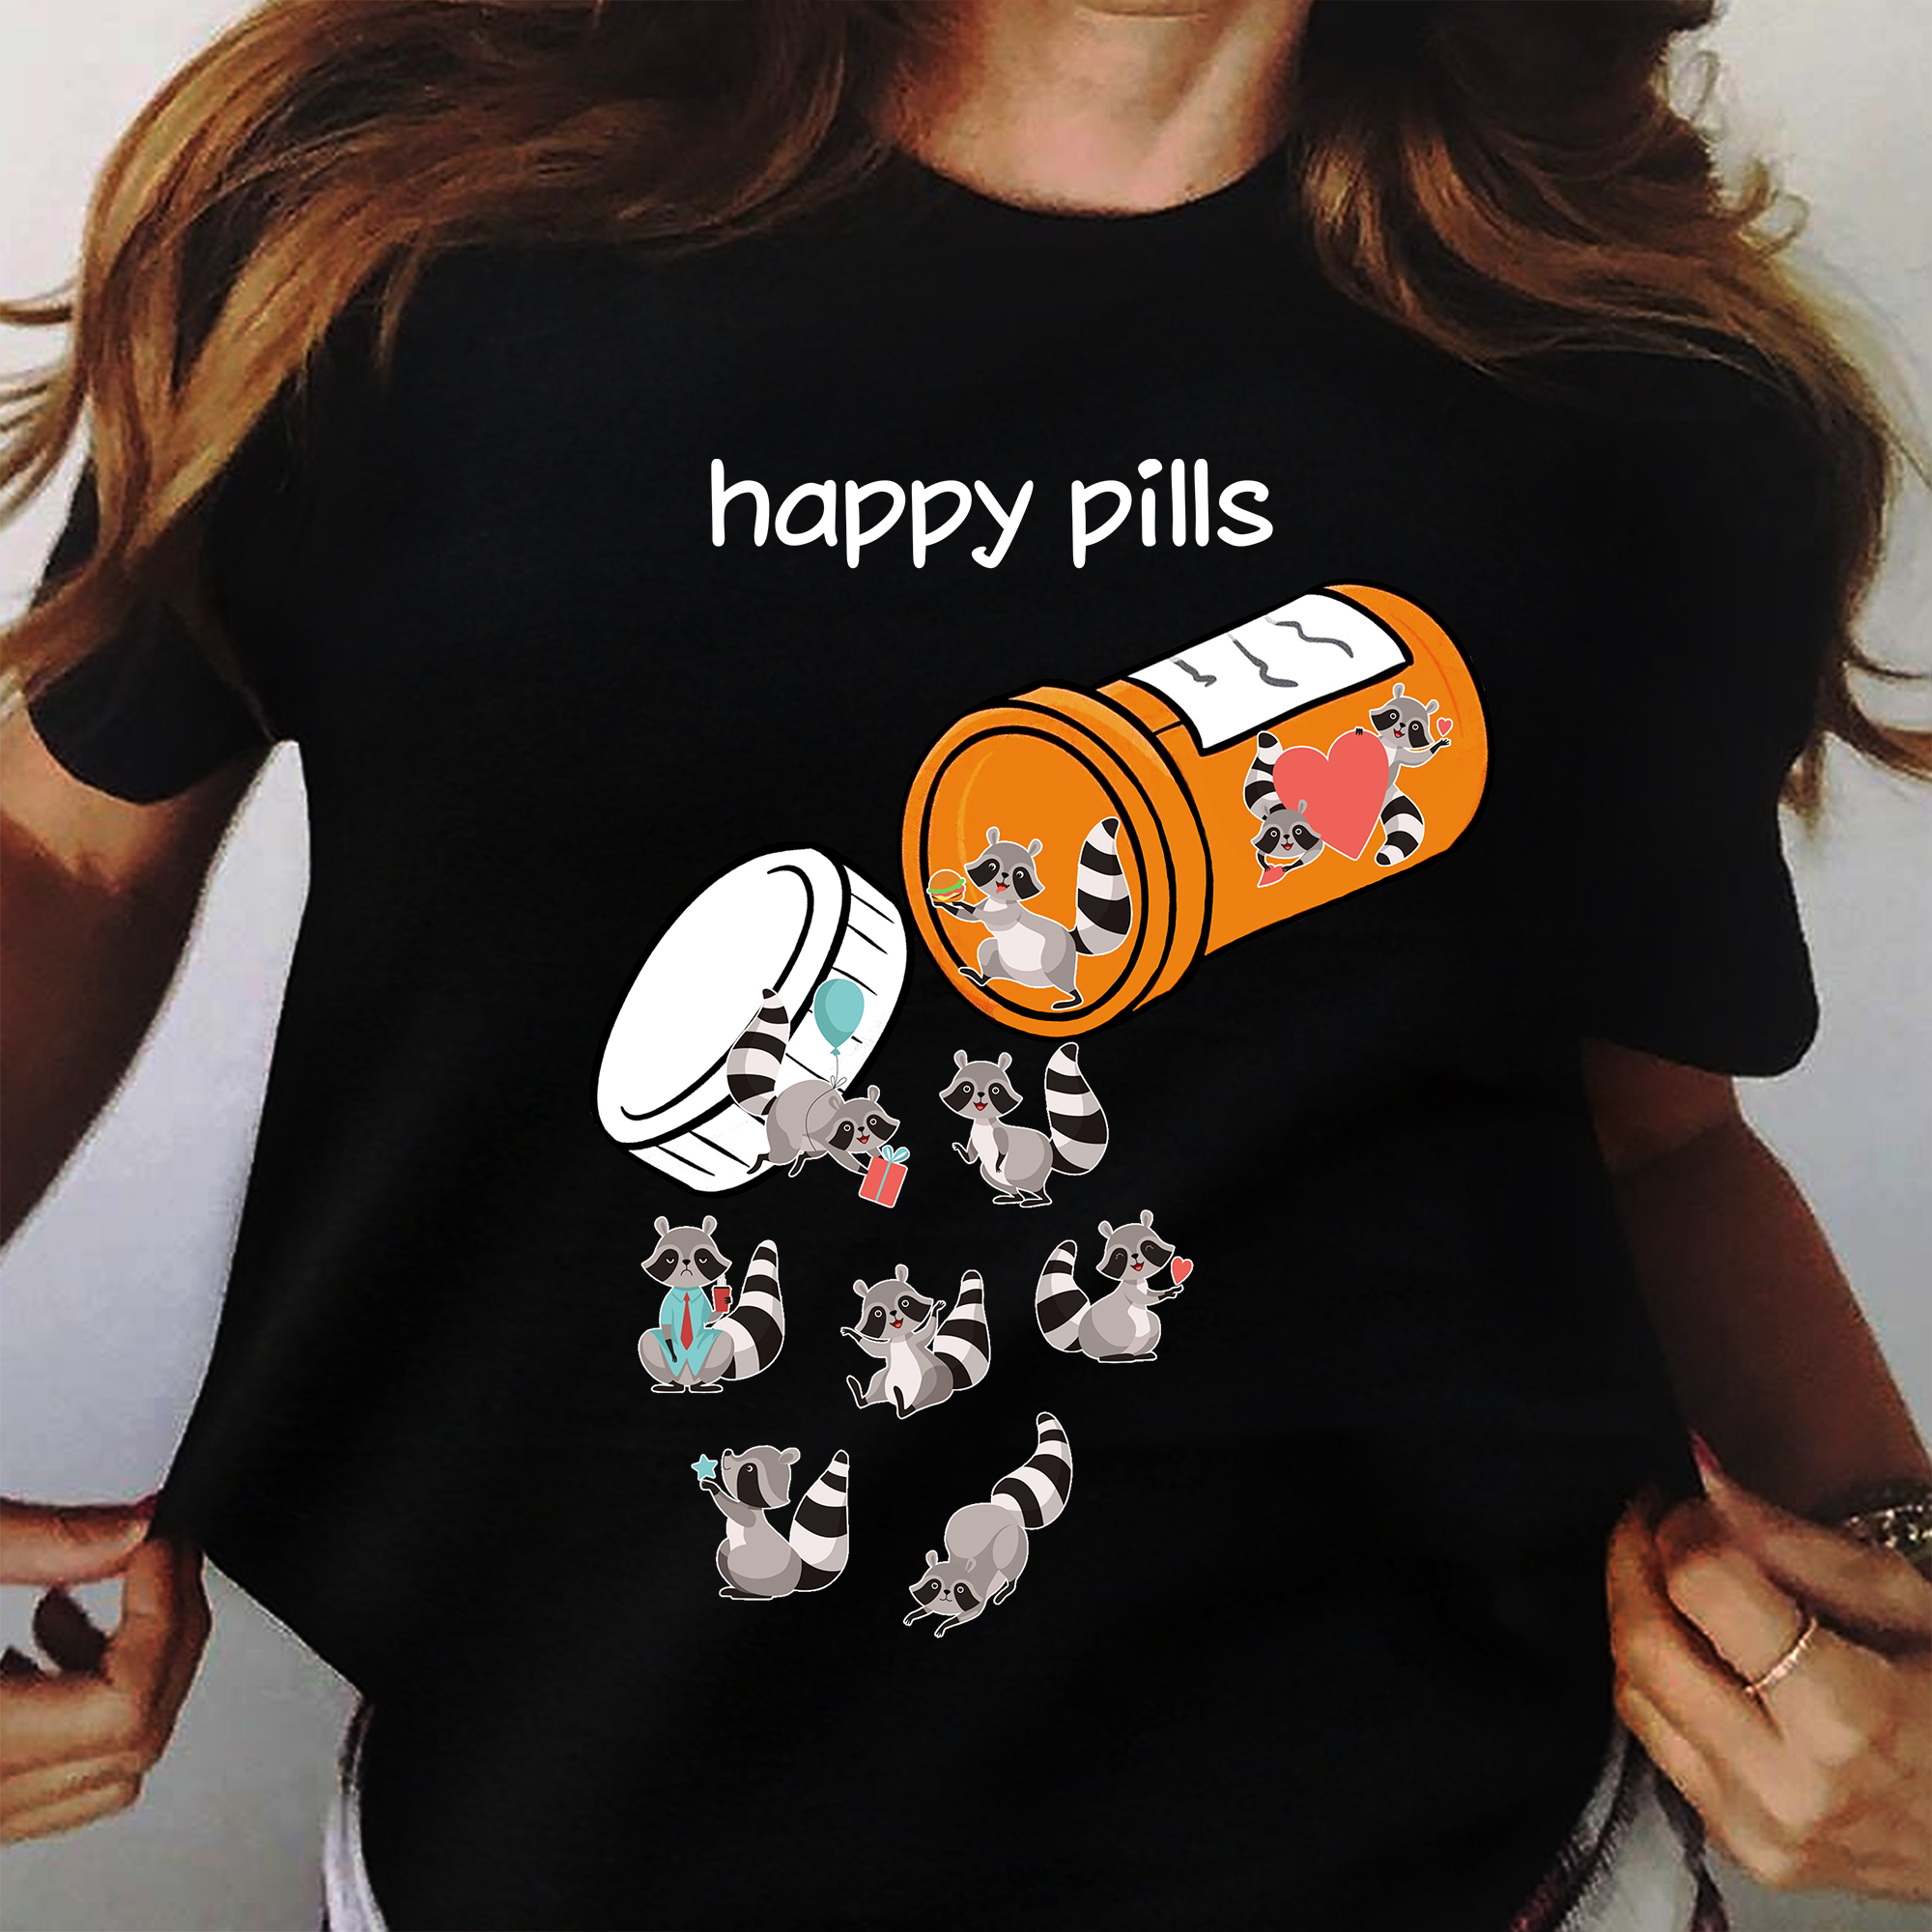 Happy pills - Racoon happy pills